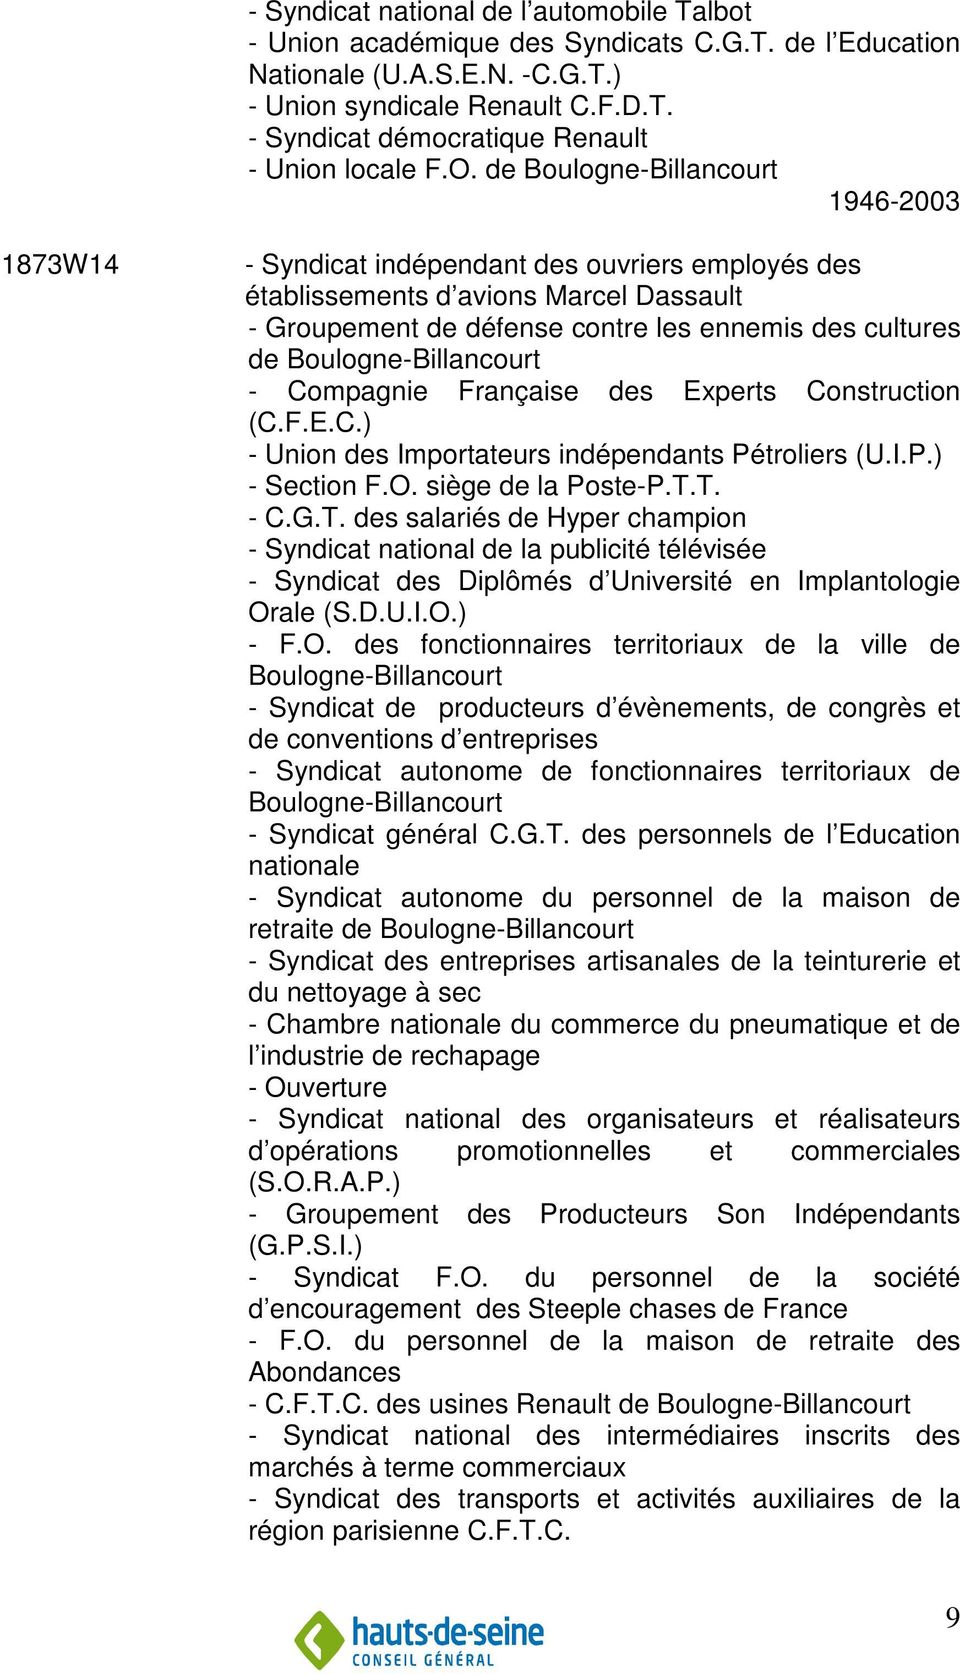 Boulogne-Billancourt - Compagnie Française des Experts Construction (C.F.E.C.) - Union des Importateurs indépendants Pétroliers (U.I.P.) - Section F.O. siège de la Poste-P.T.